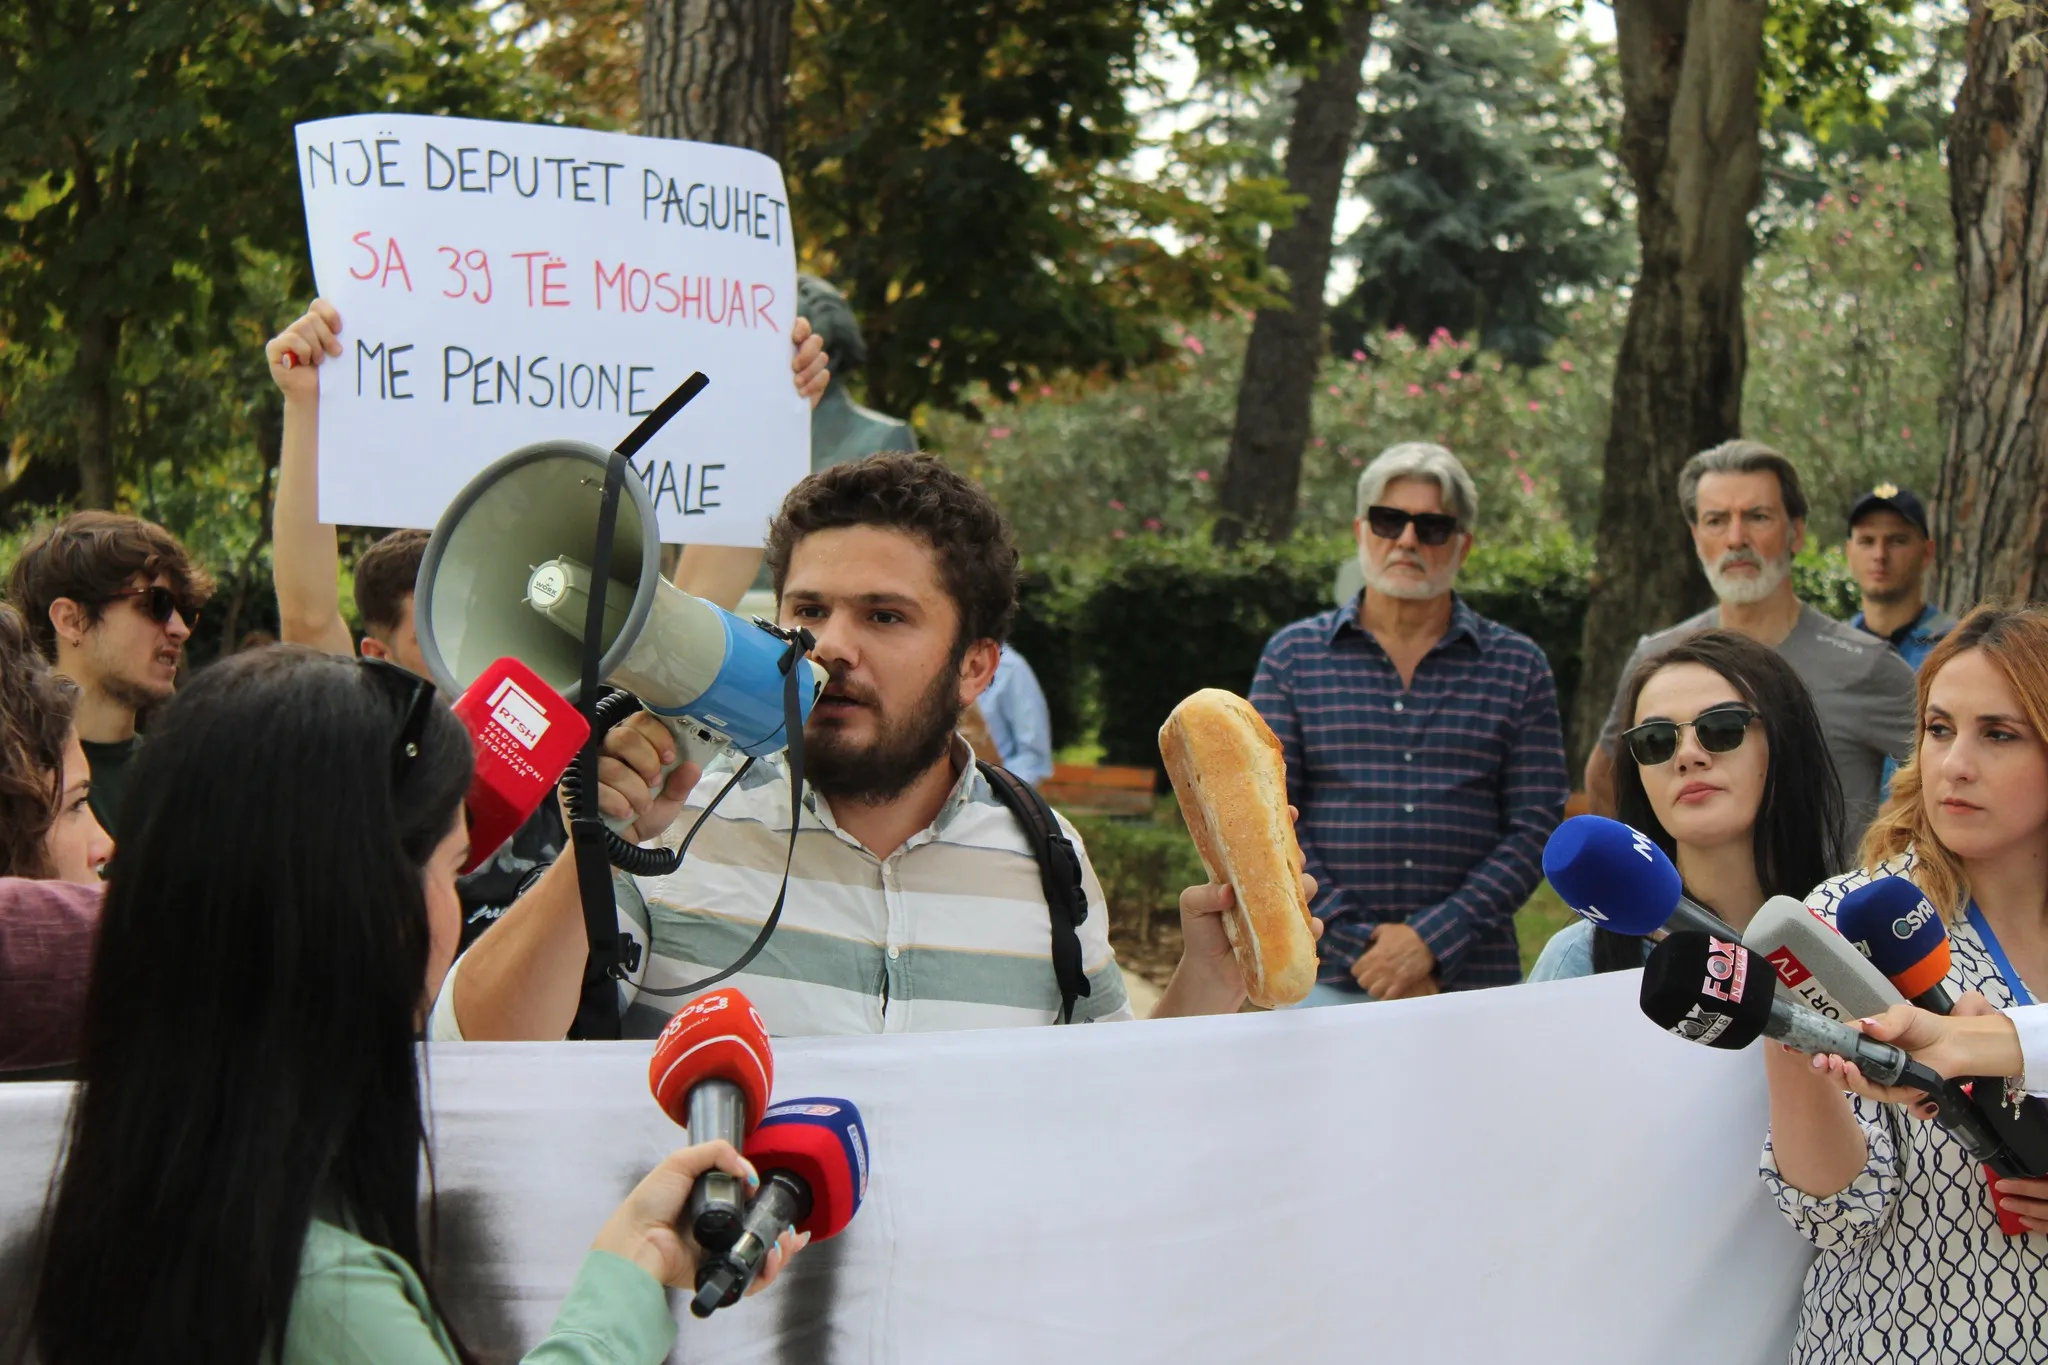 Klodi Leka duke folur ne protesten e Minimumit Jetik me nje buke ne dore, dhe nje pankarte pas tij e cila shkruan: Nje Deputet paguhet sa 39 te moshuar me pension minimal